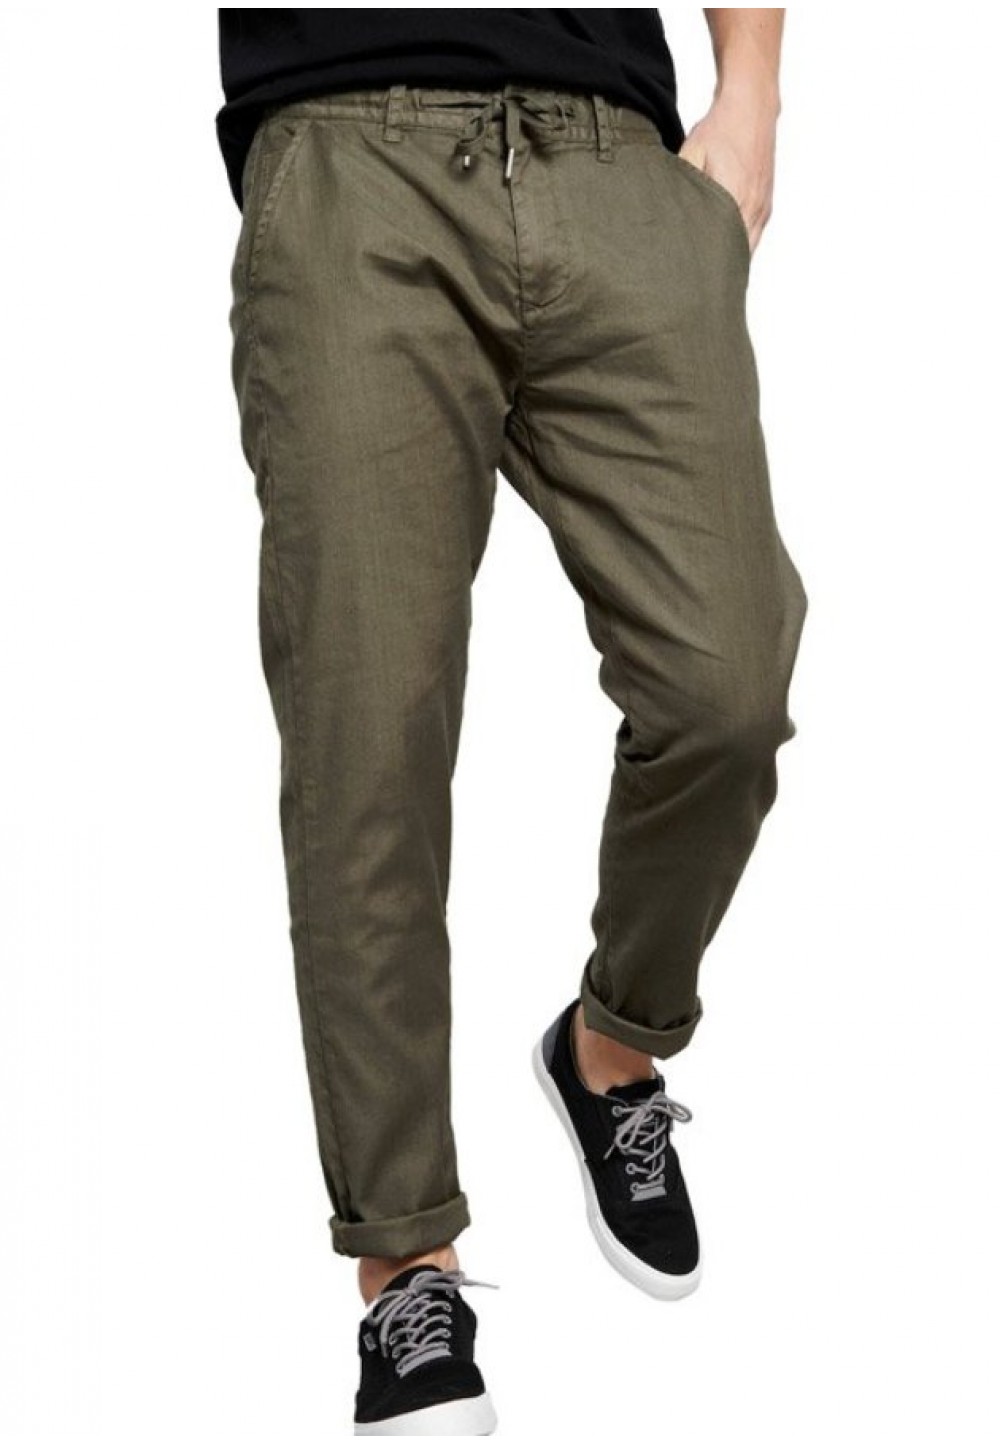 Стильные брюки цвета хаки